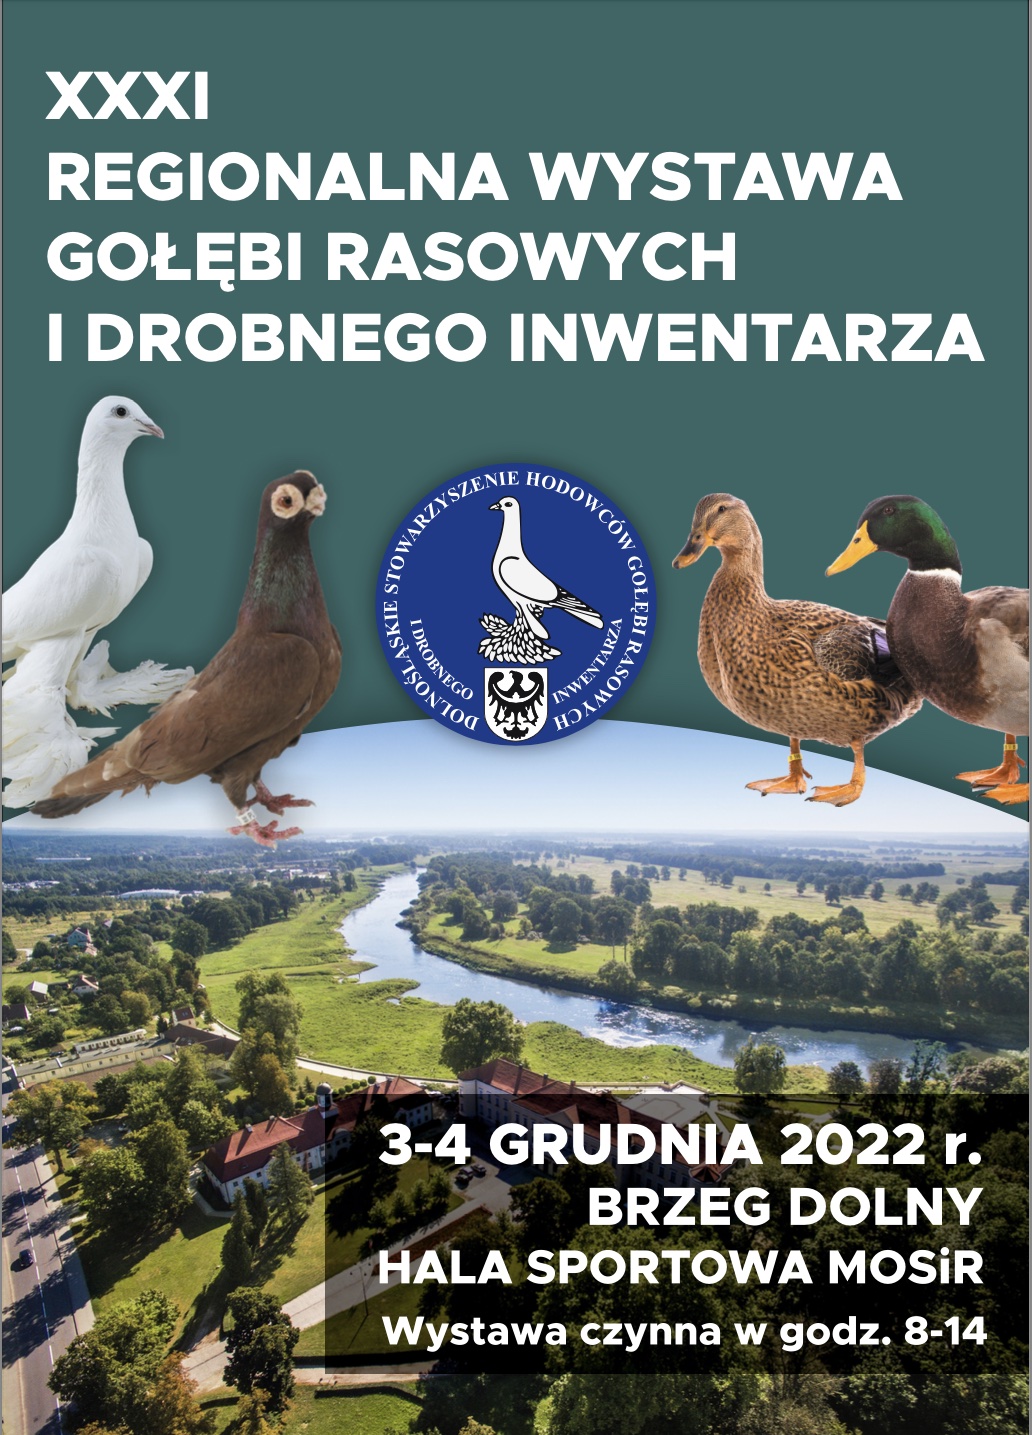 NOWA Wystawa w Brzegu Dolnym 03-04 grudnia 2022 r.